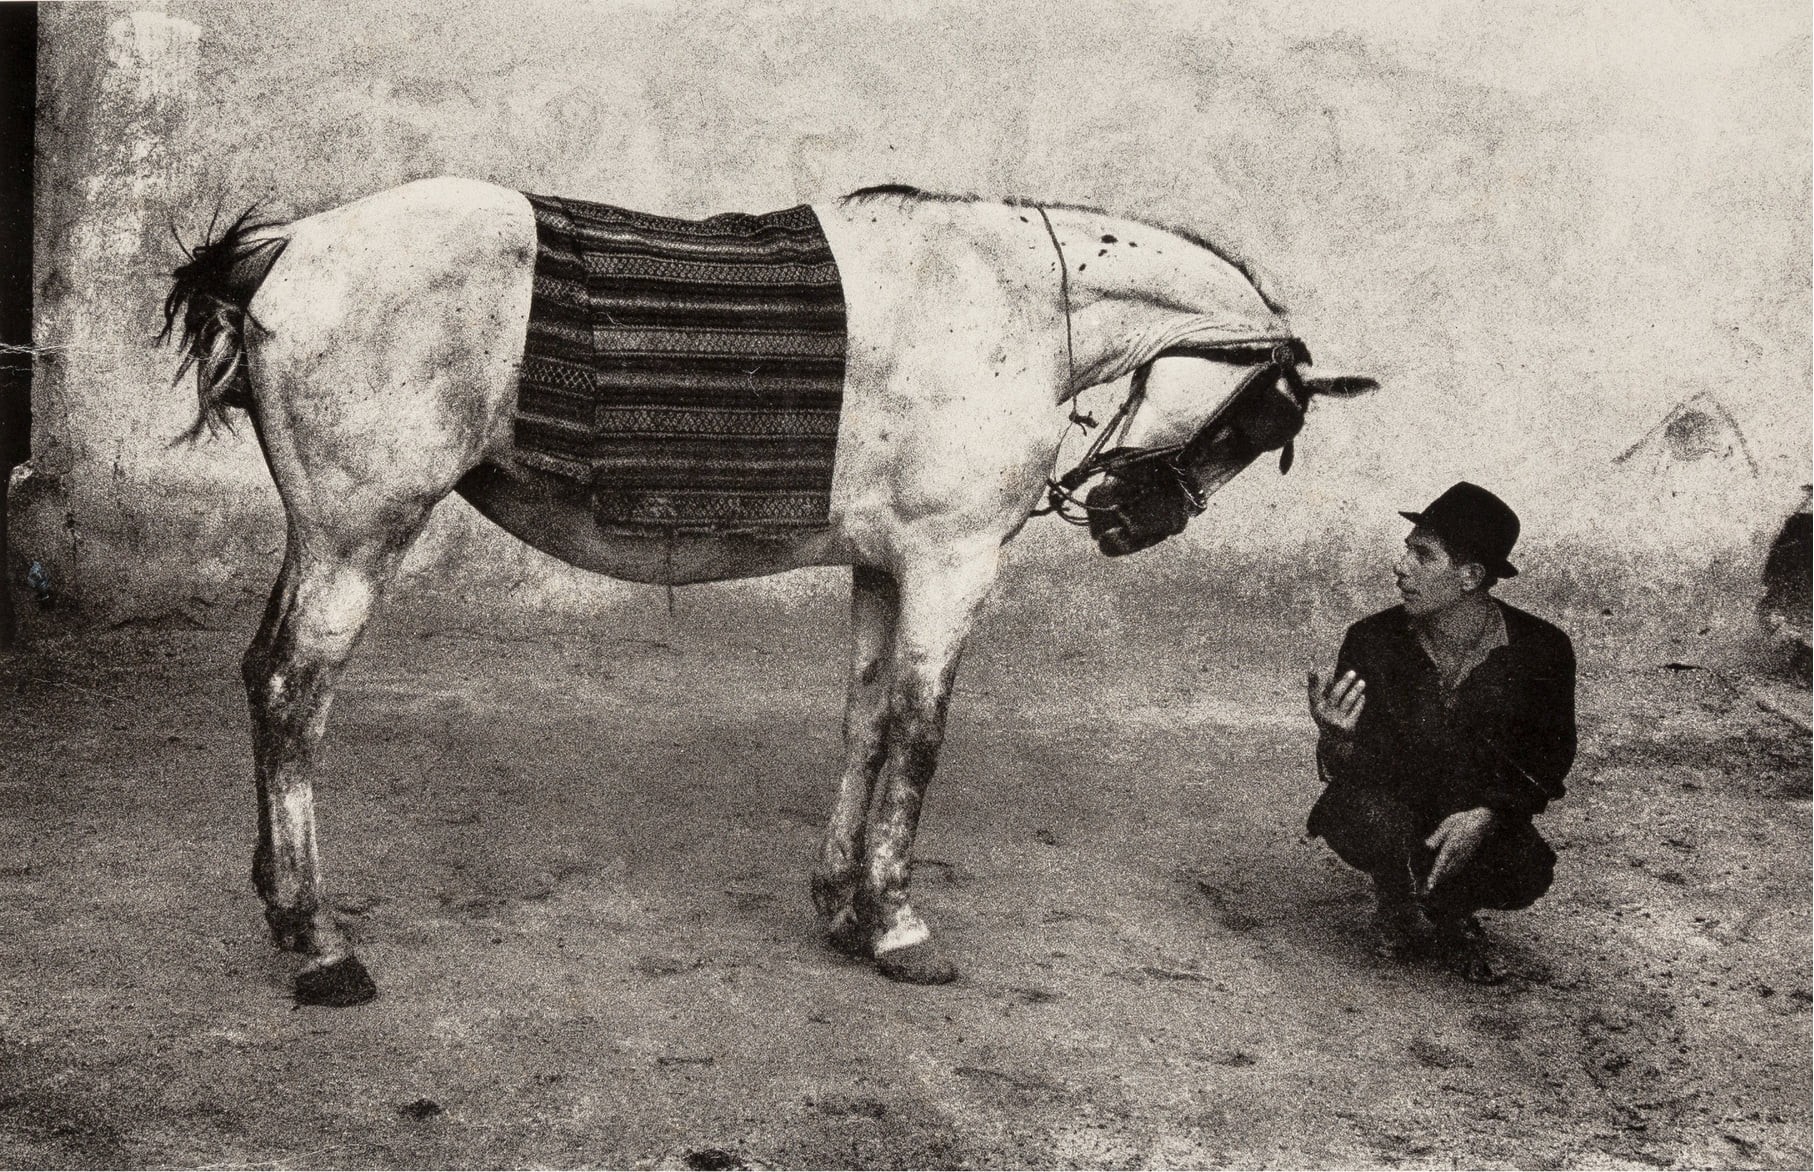 Цыган с лошадью, Румыния, 1968. Фотограф Йозеф Куделка